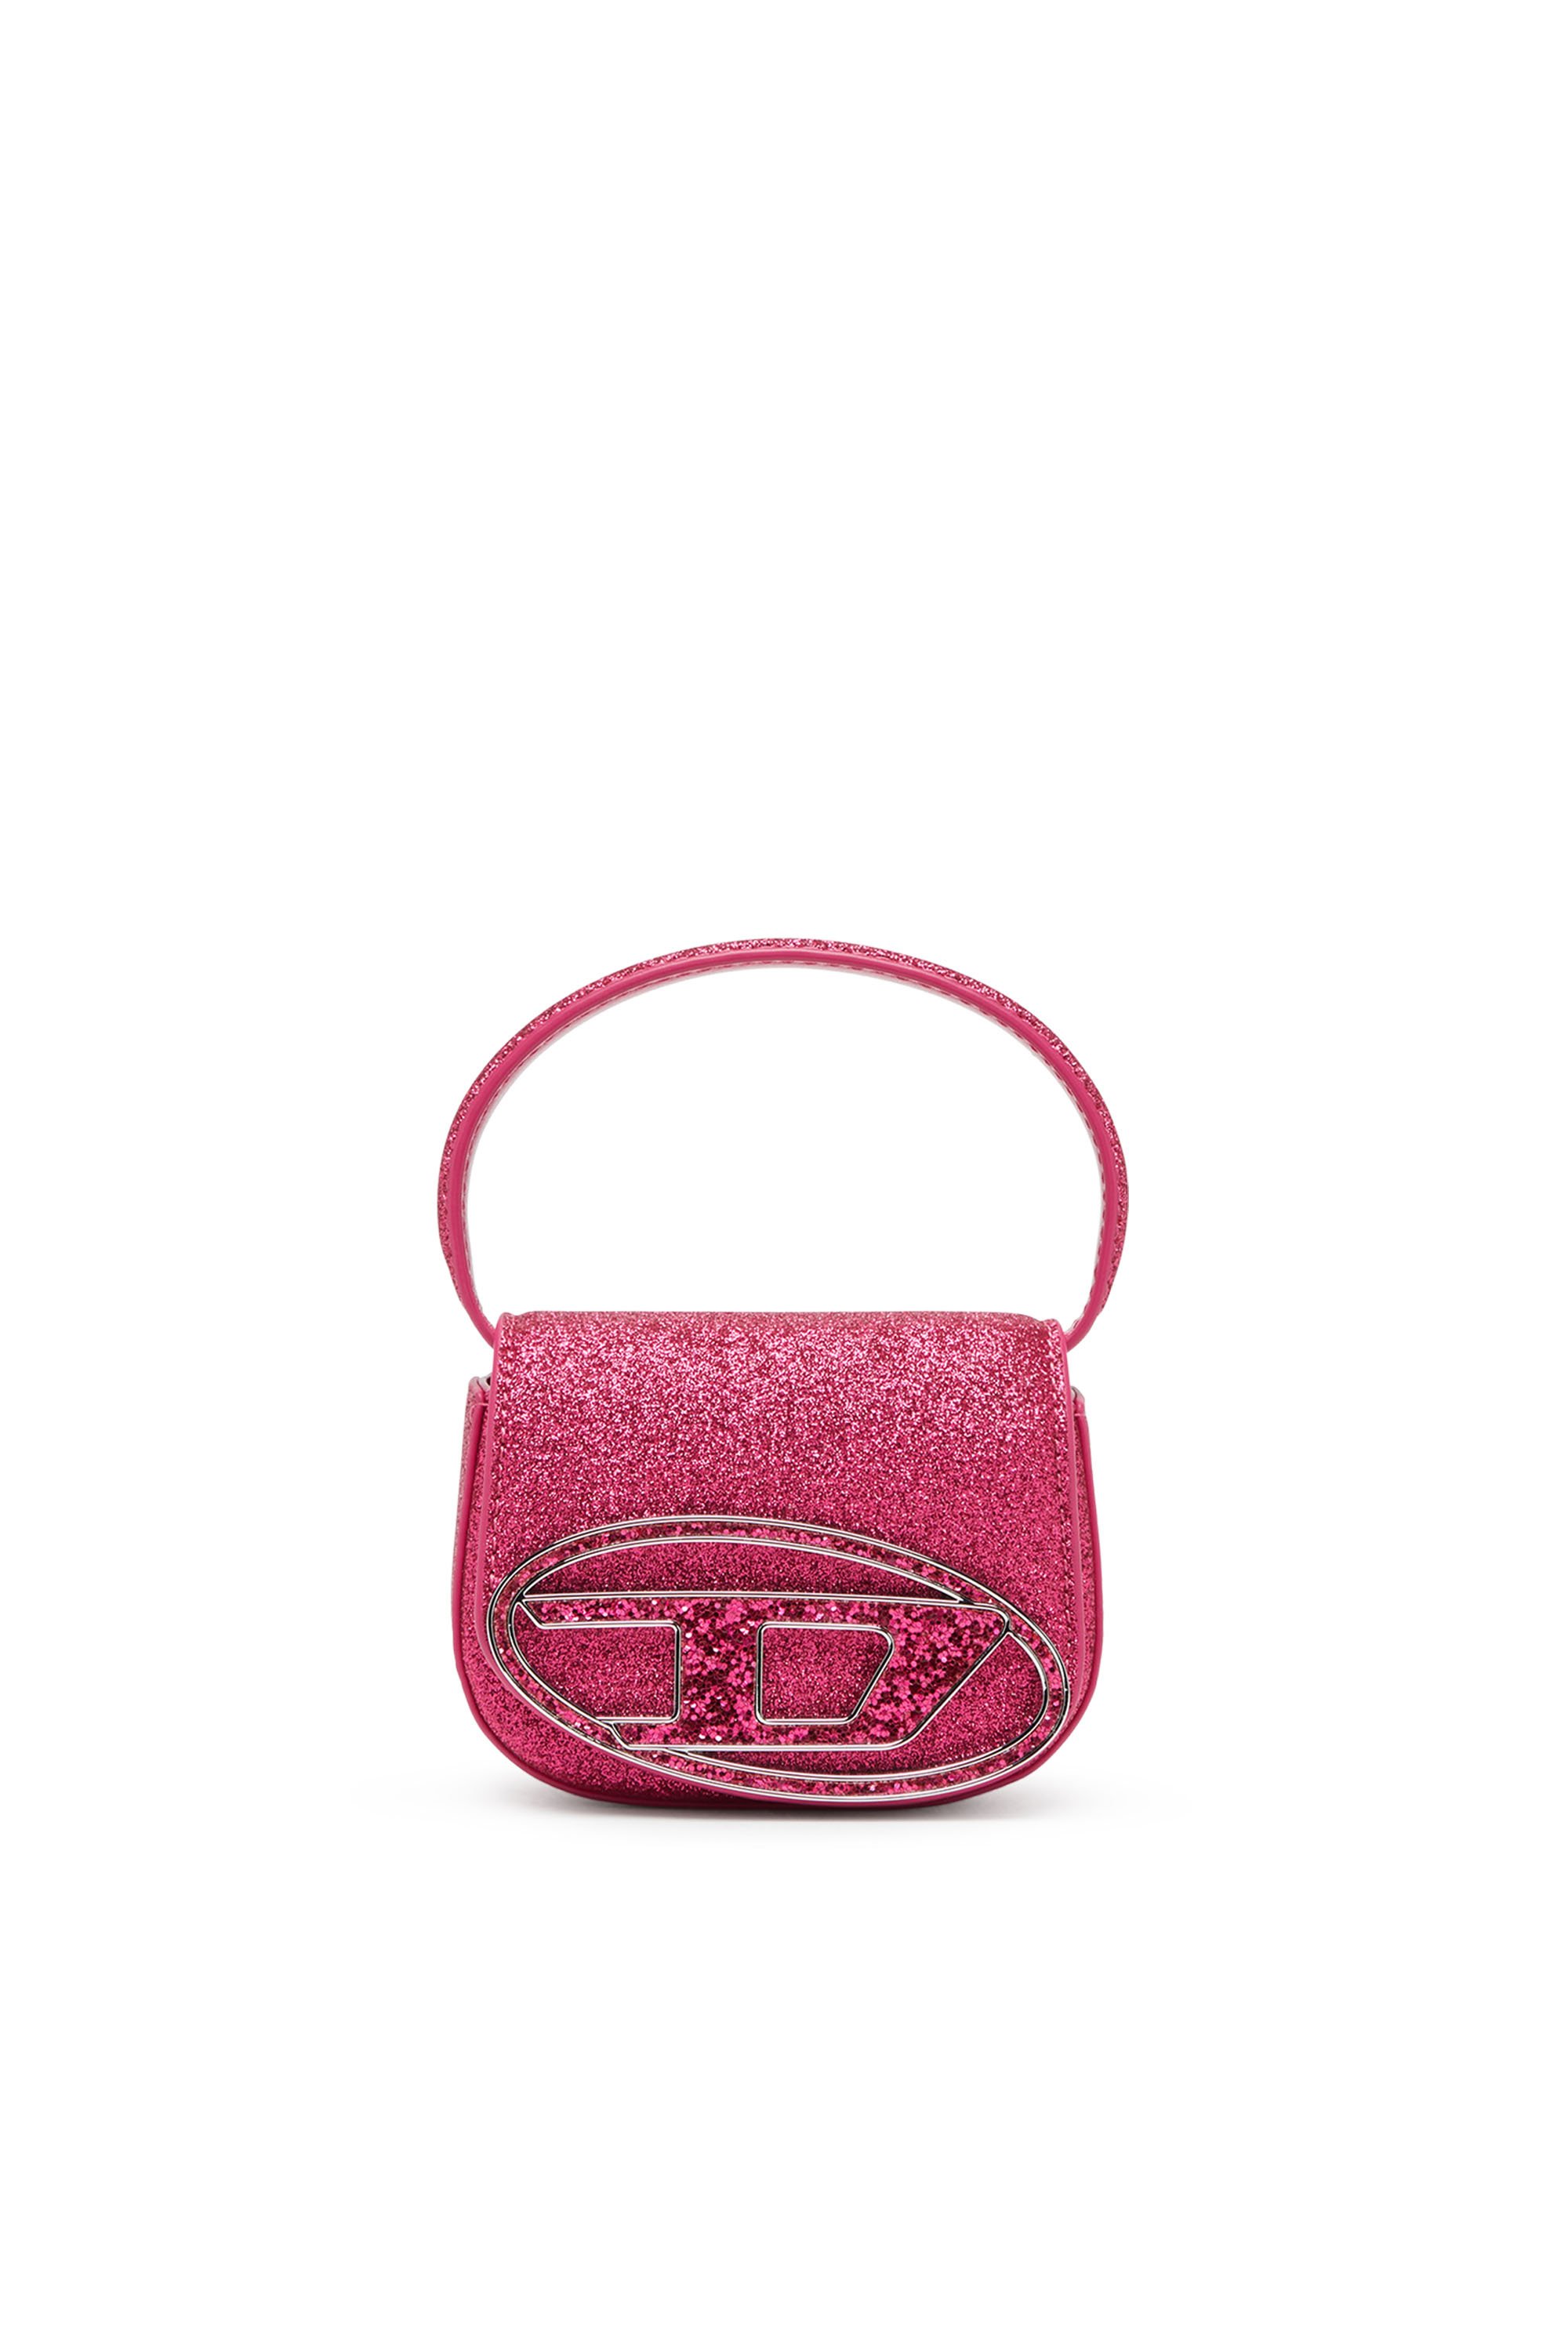 Diesel - 1DR XS Cross Bodybag - Minibolso icónico de tejido brillante - Bolso cruzados - Mujer - Rosa